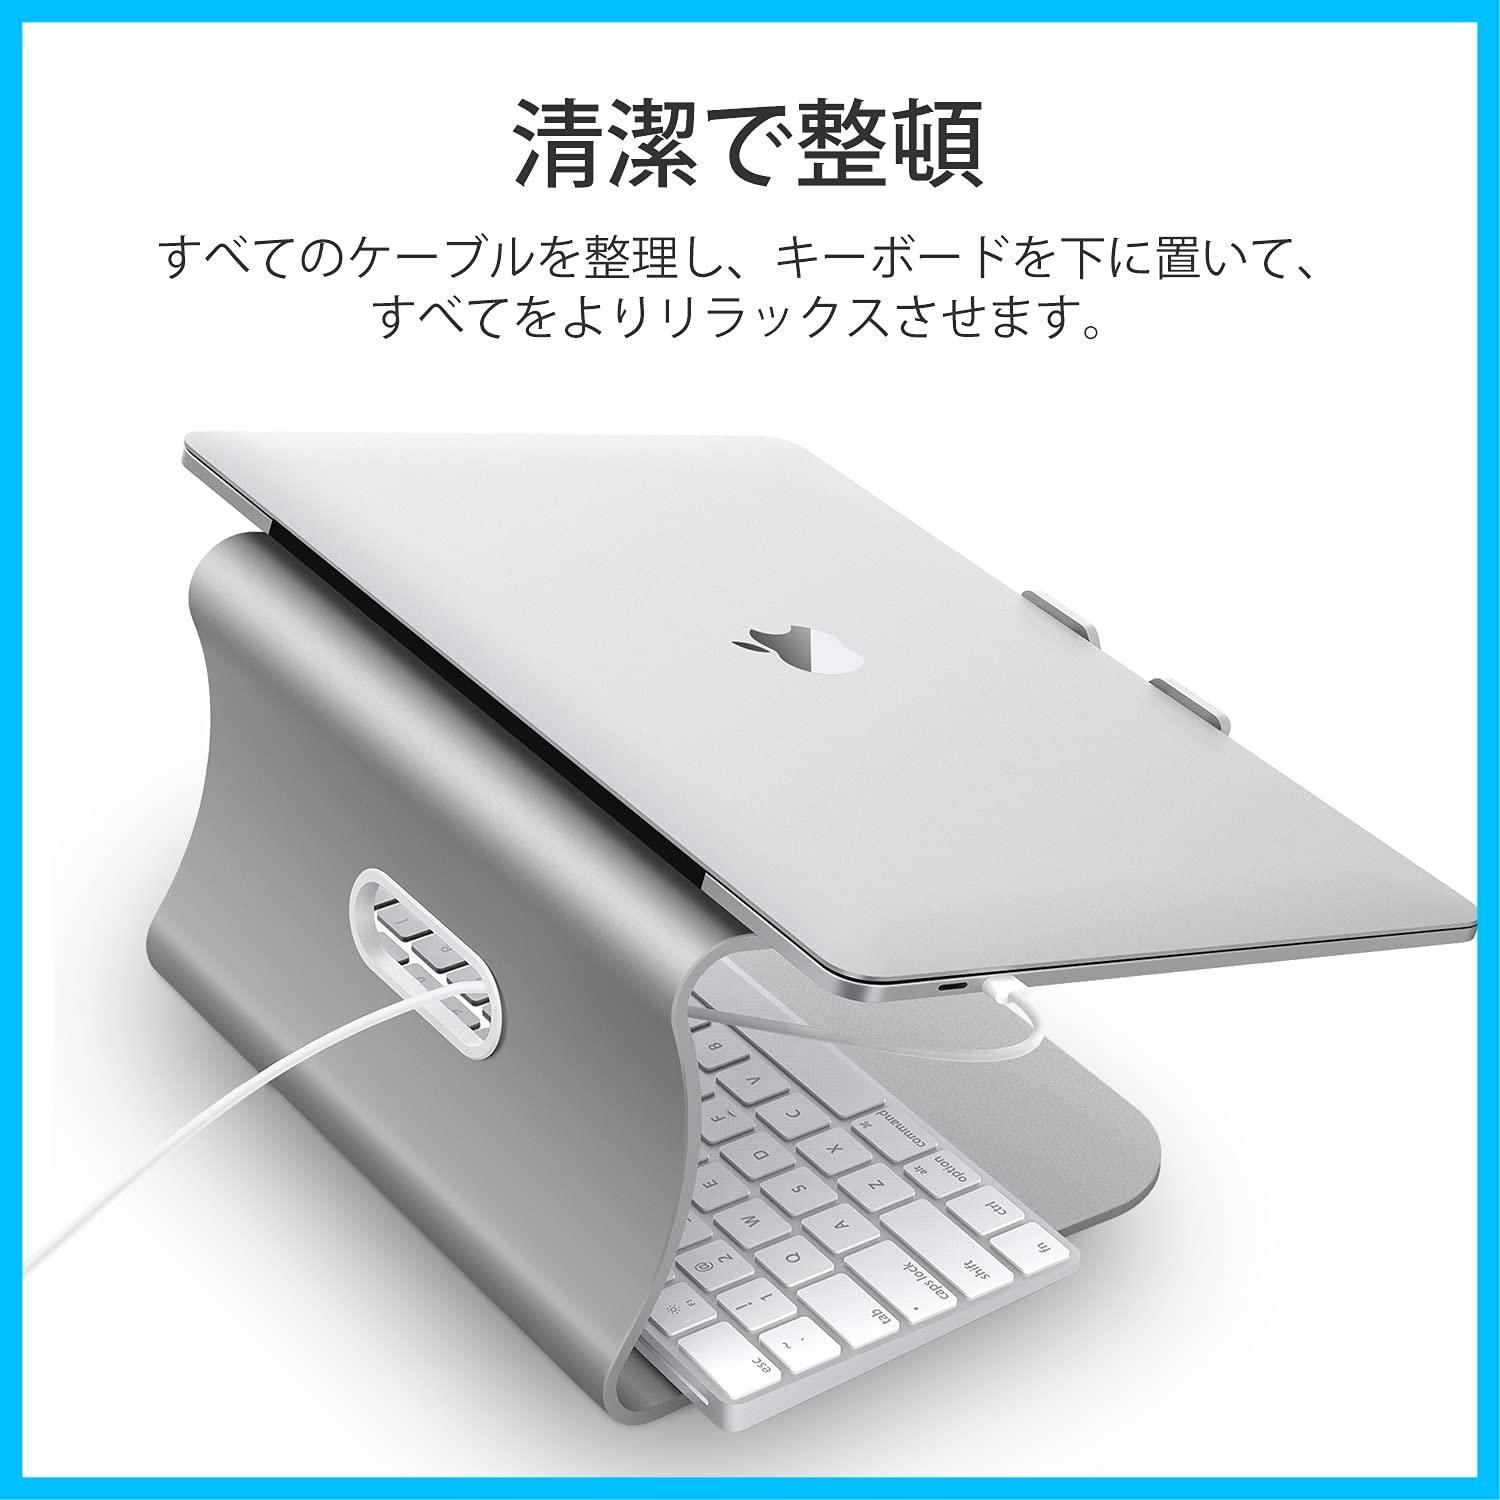 【特価商品】Macbook '' Air '' -16 Pro/富士通と互換性のある放熱性に 11 アルミニウム合金PCスタンド-シルバー Bestandノートパソコンスタンド